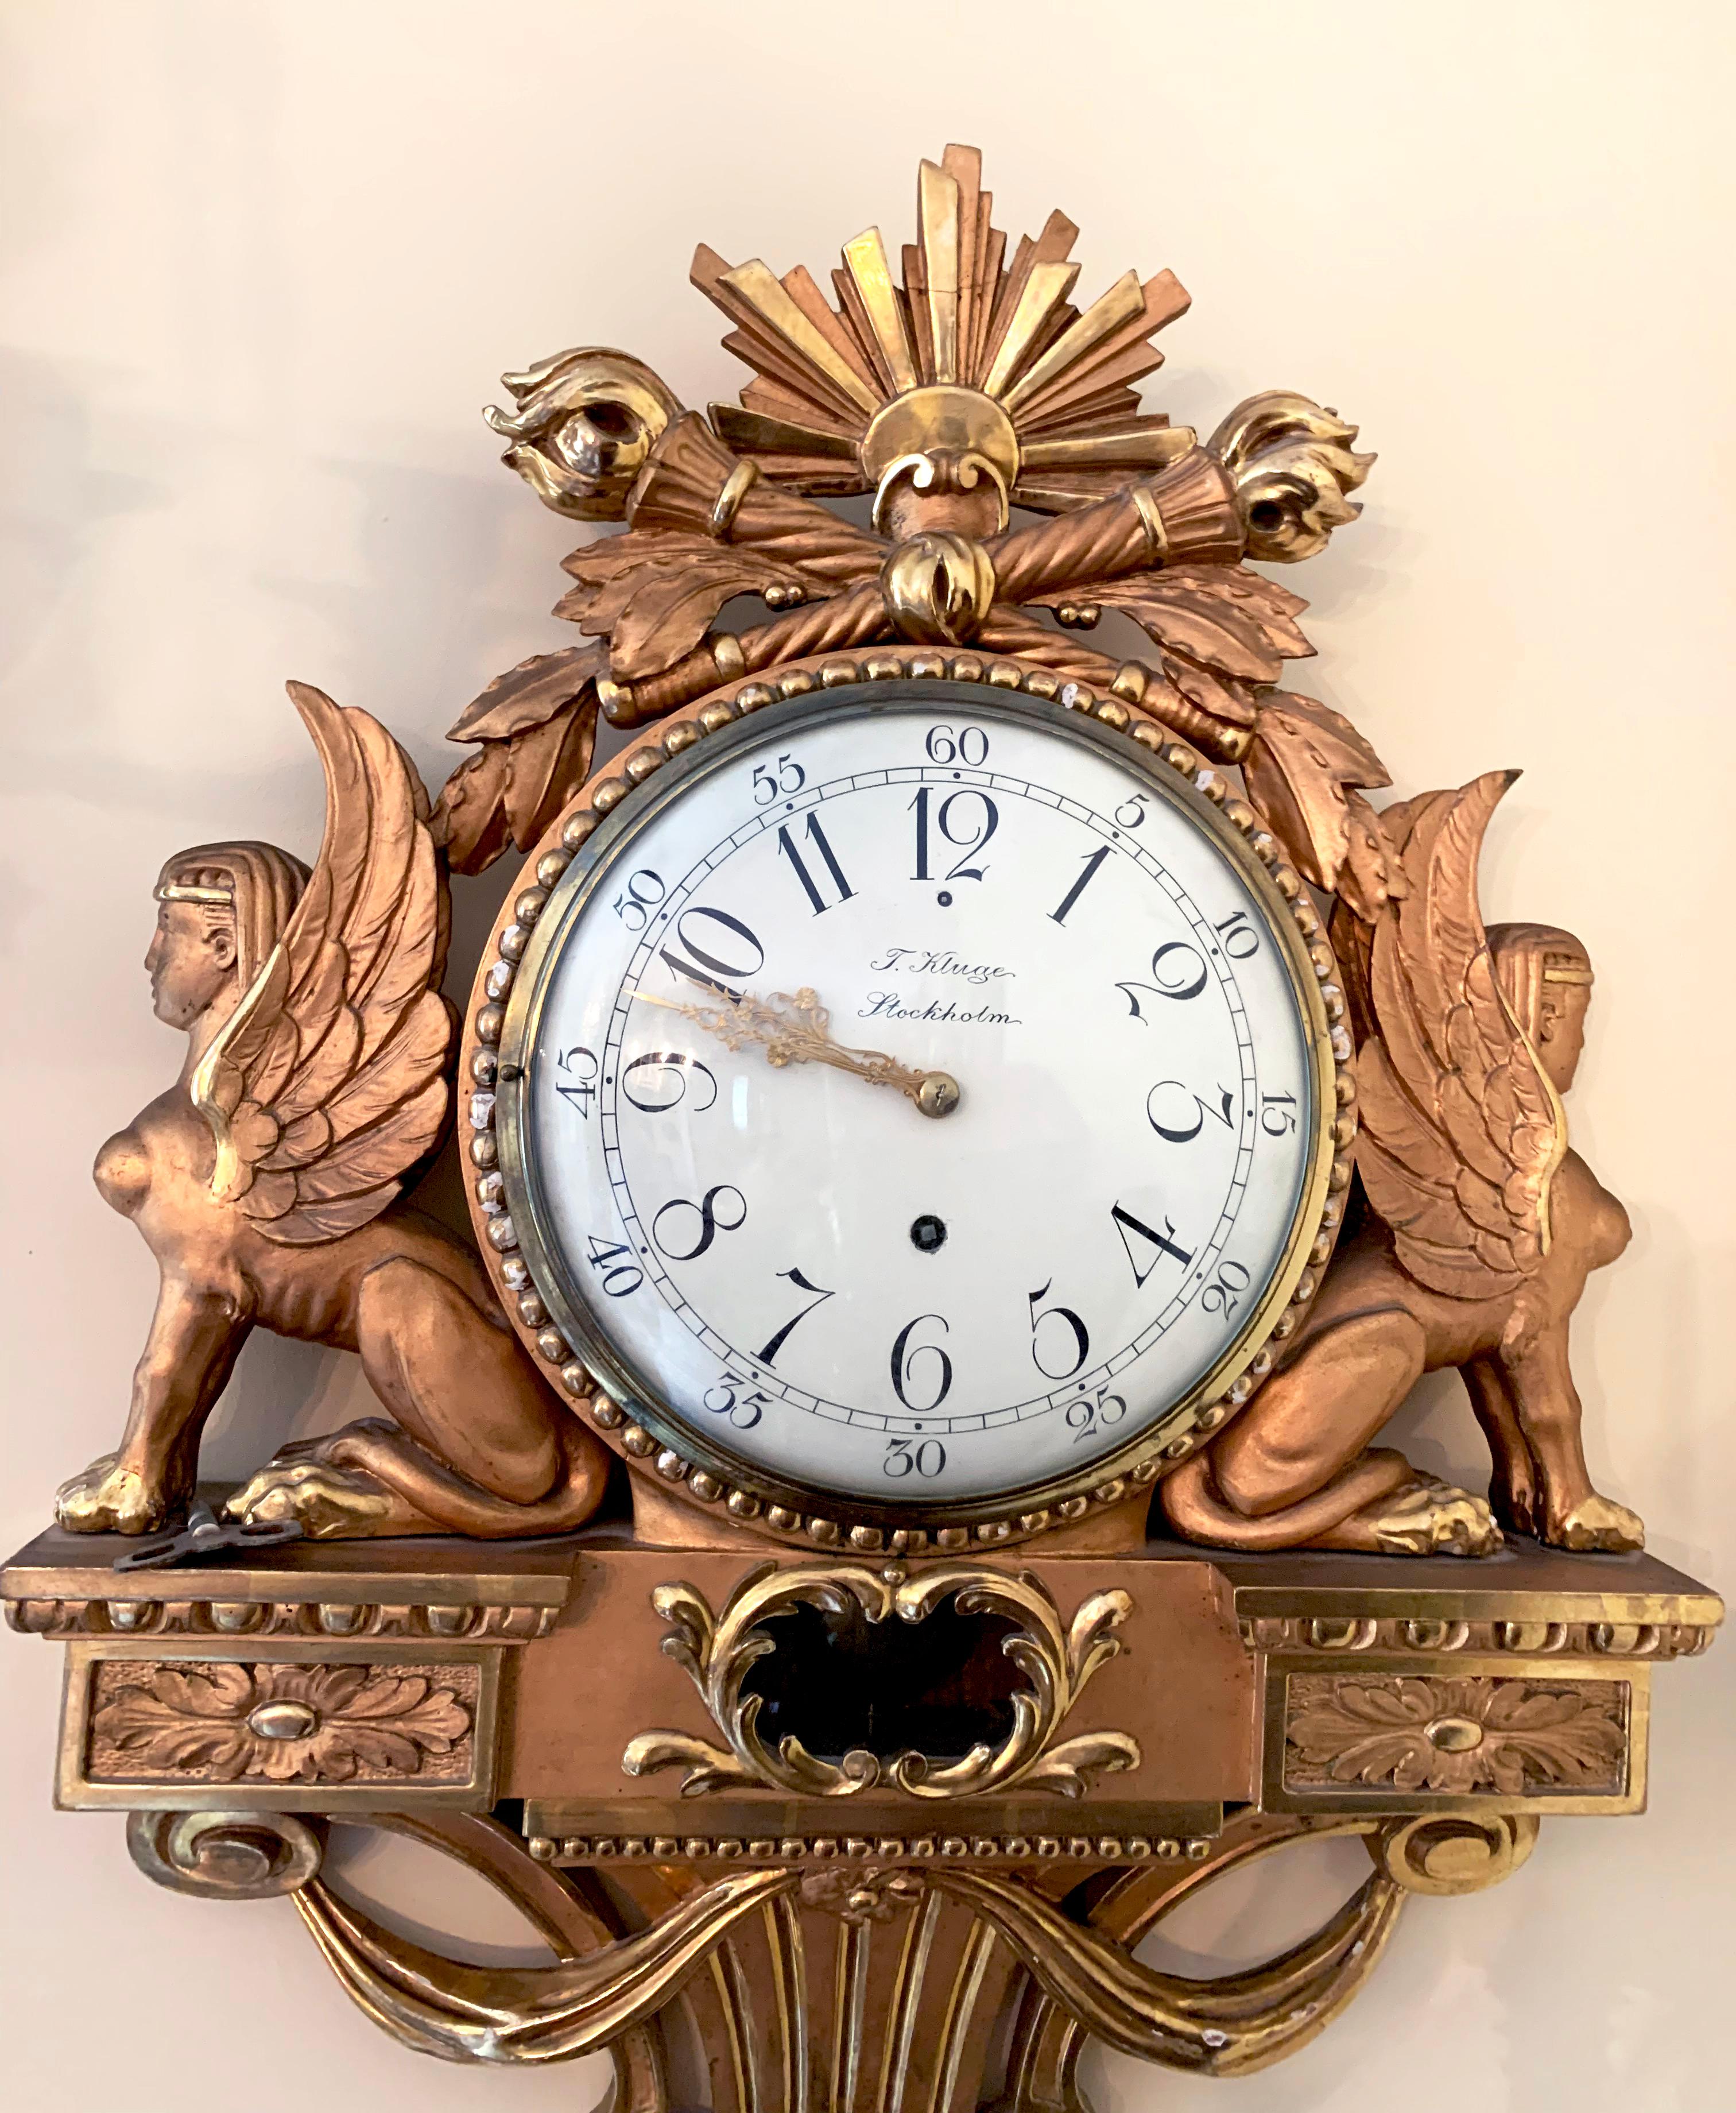 Eine schöne vergoldete Empire-Uhr aus dem 19. Jahrhundert mit Sphinxen auf jeder Seite. Signiert mit T Kluge Stockholm auf der Rückseite. 
Schwarzes und weißes gewölbtes Zifferblatt mit goldenen Nadeln. Ein sehr dekoratives Stück aus der damaligen